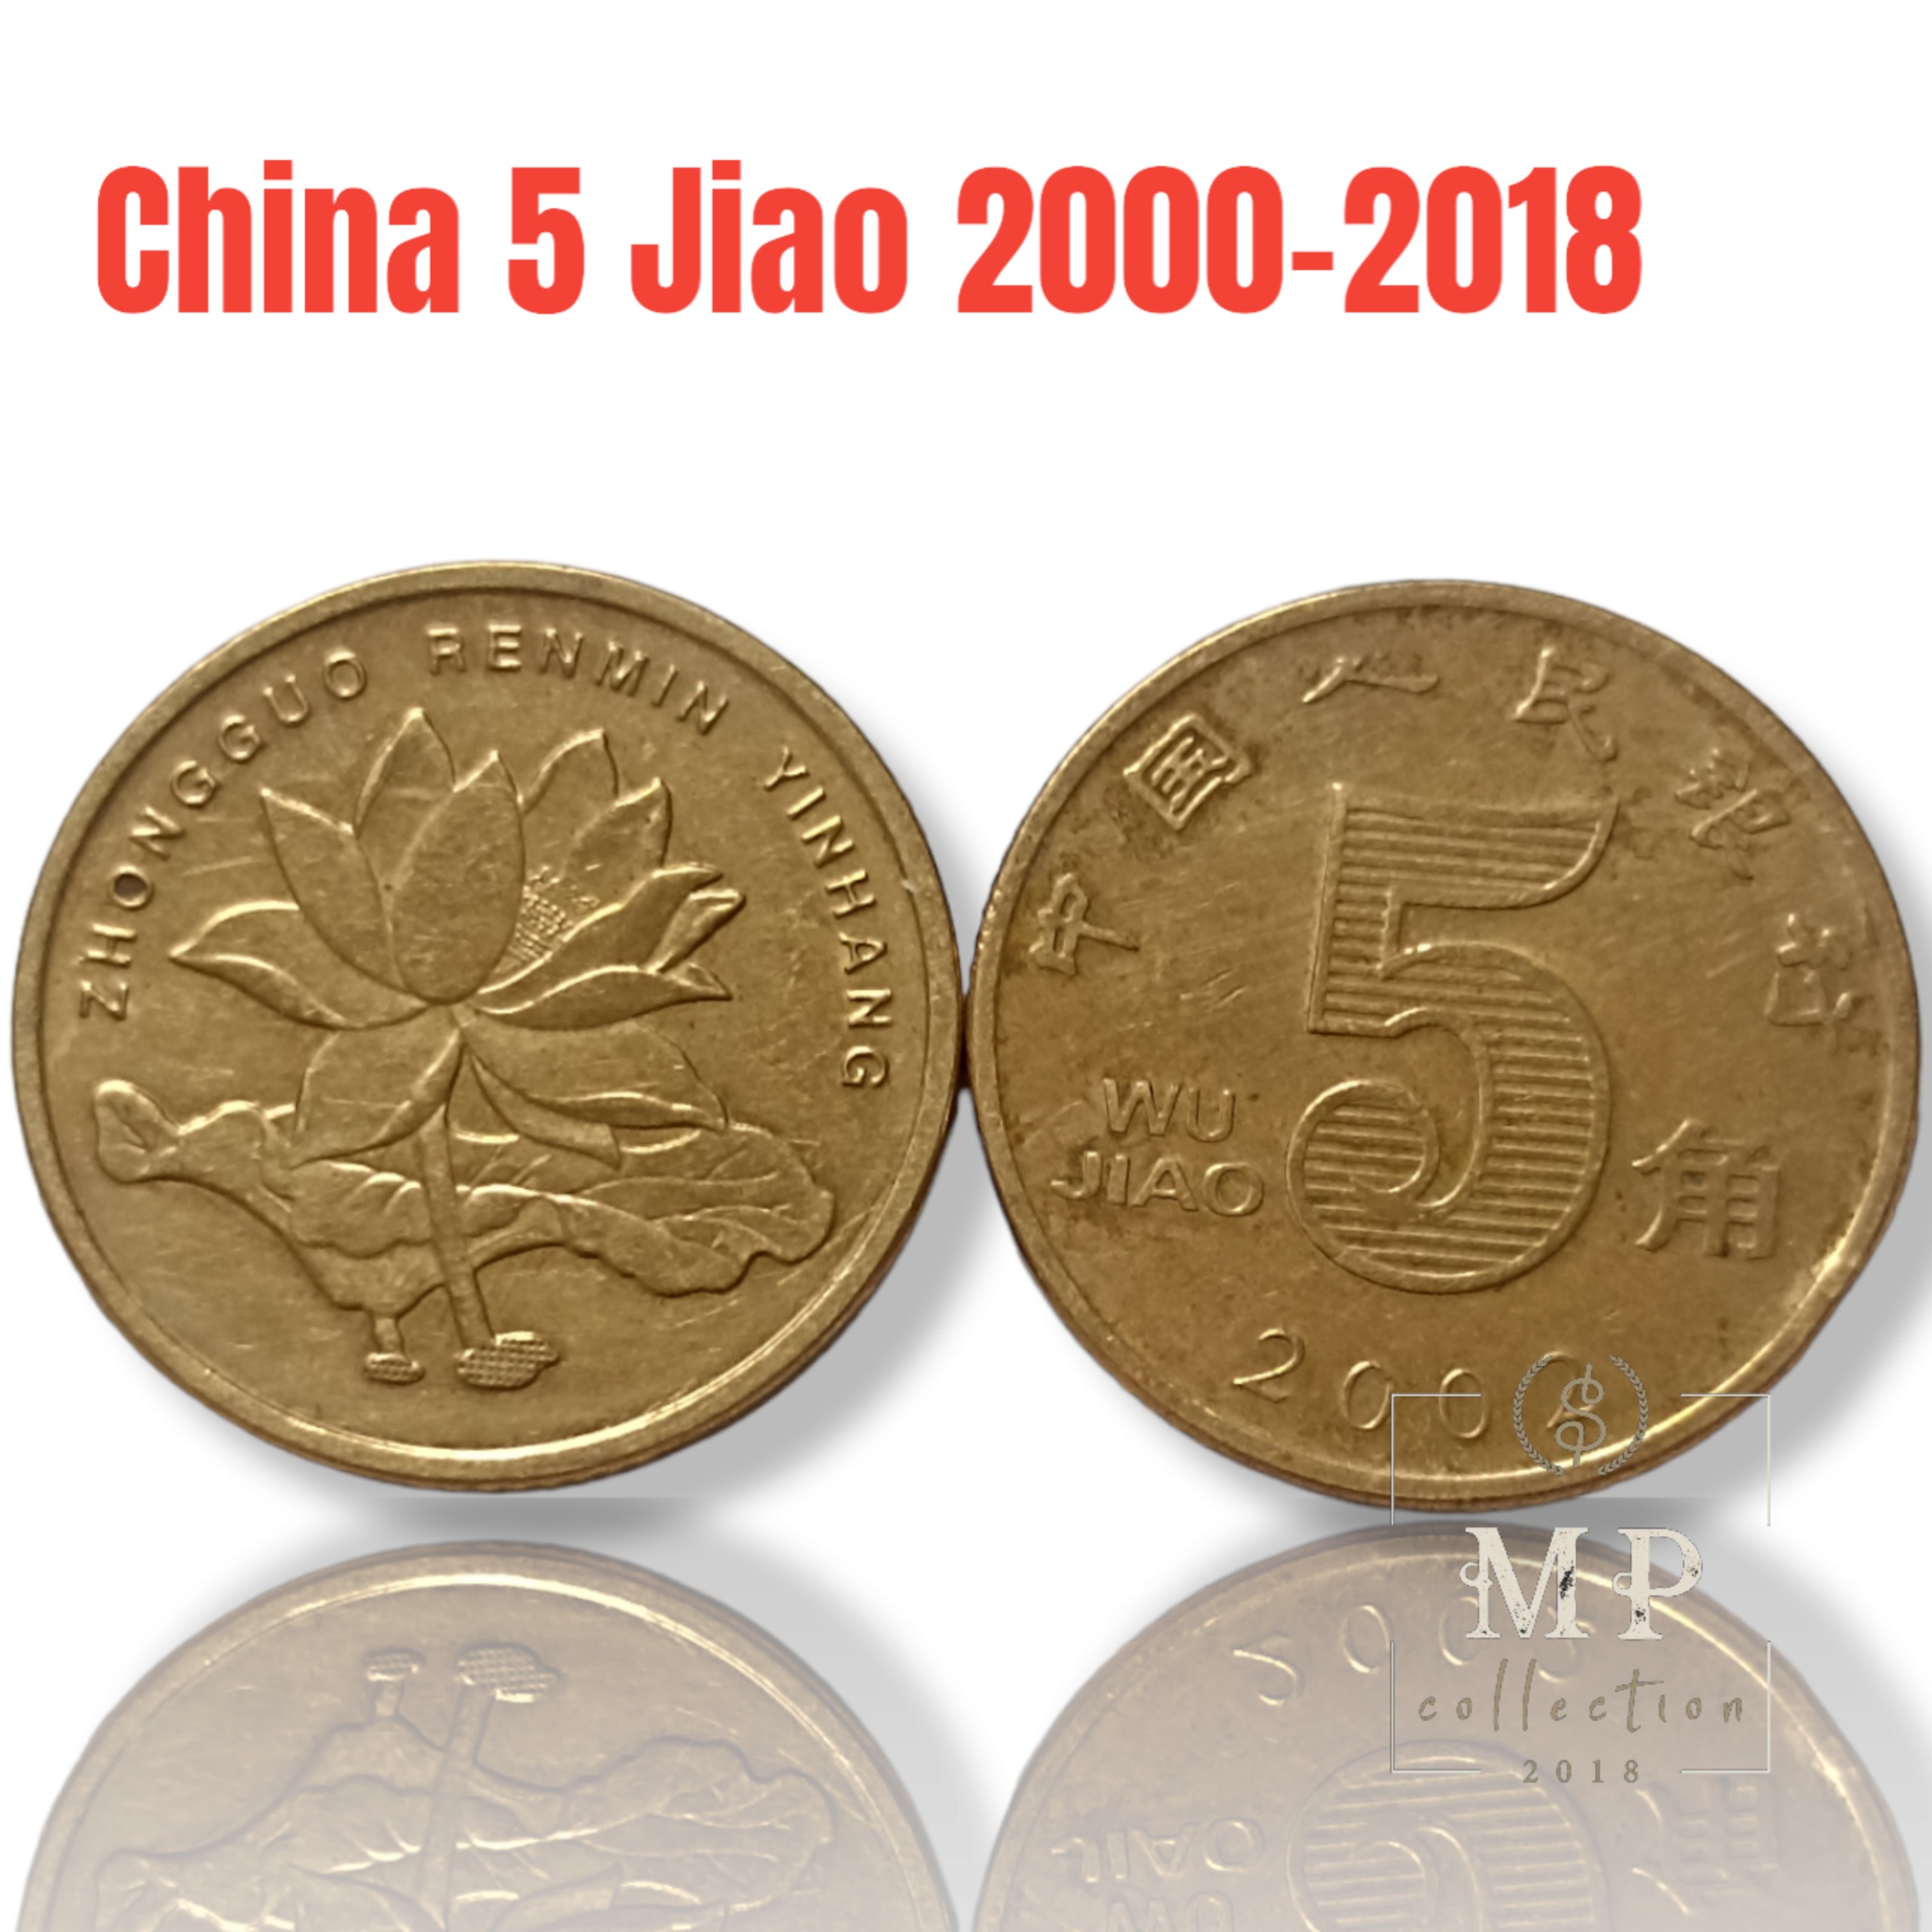 Đồng xu China 5 Jiao 2000-2018